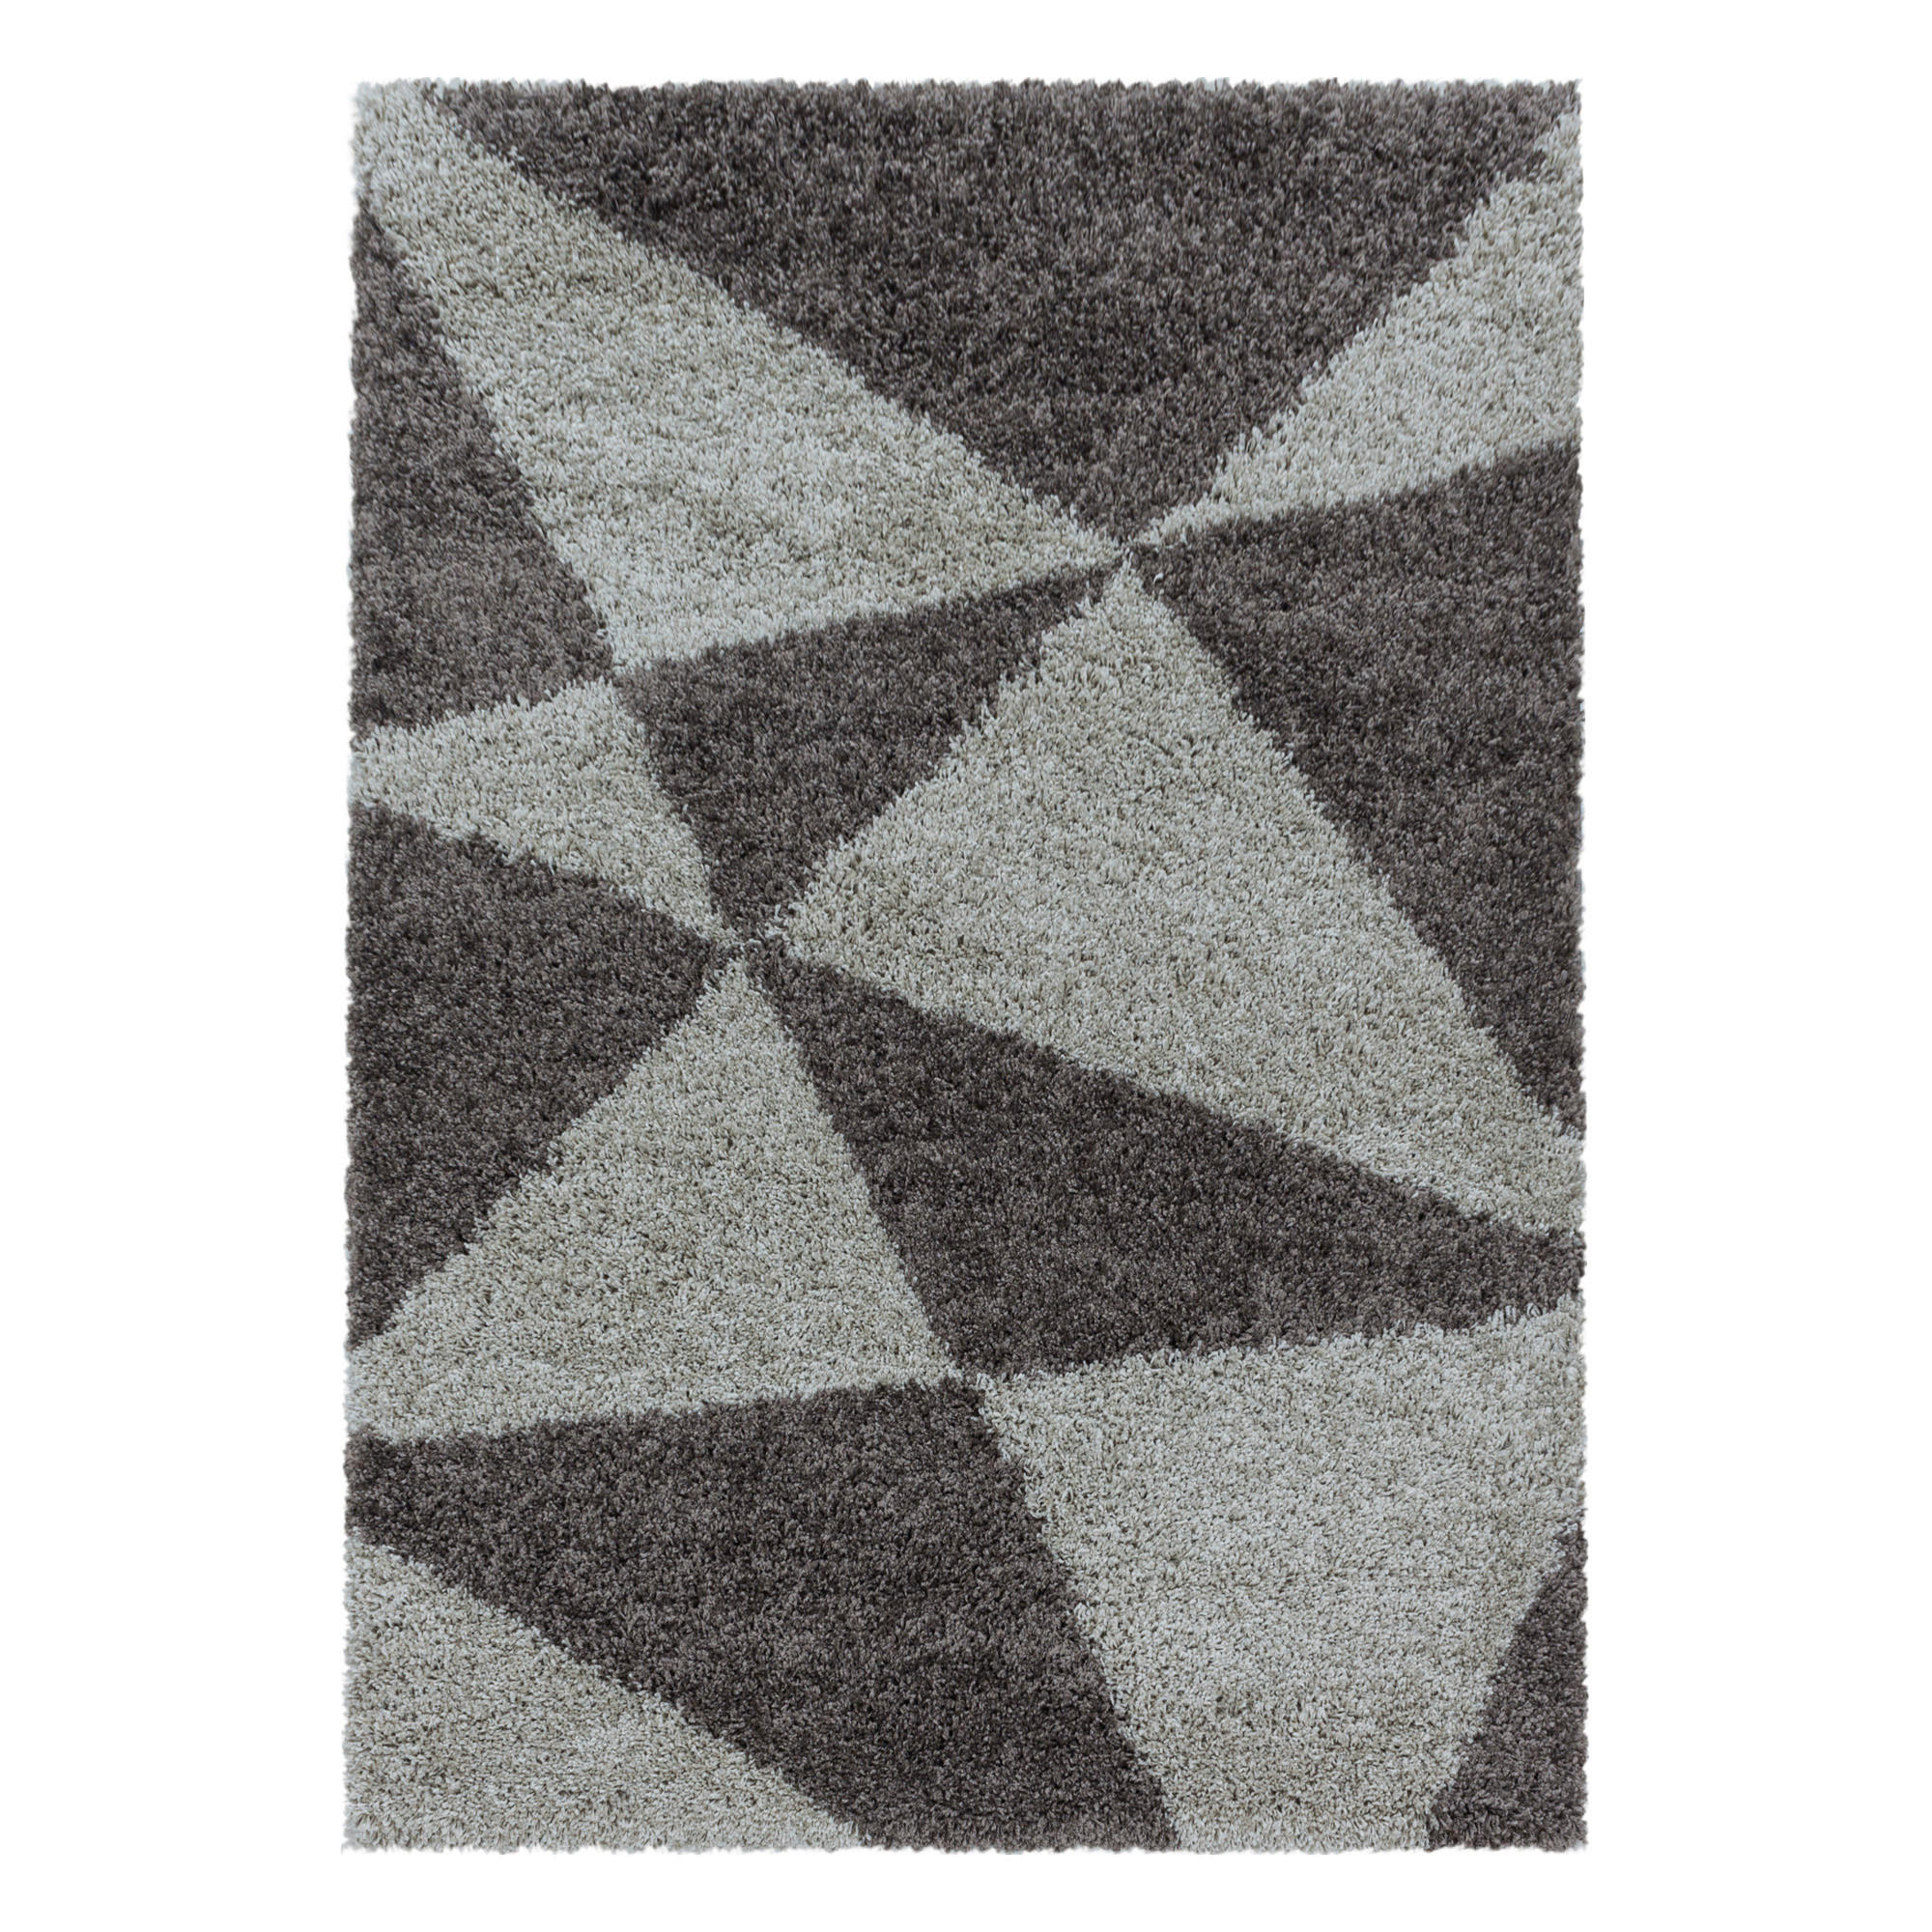 HOCHFLORTEPPICH  200/290 cm  gewebt  Taupe   - Taupe, Design, Textil (200/290cm) - Novel